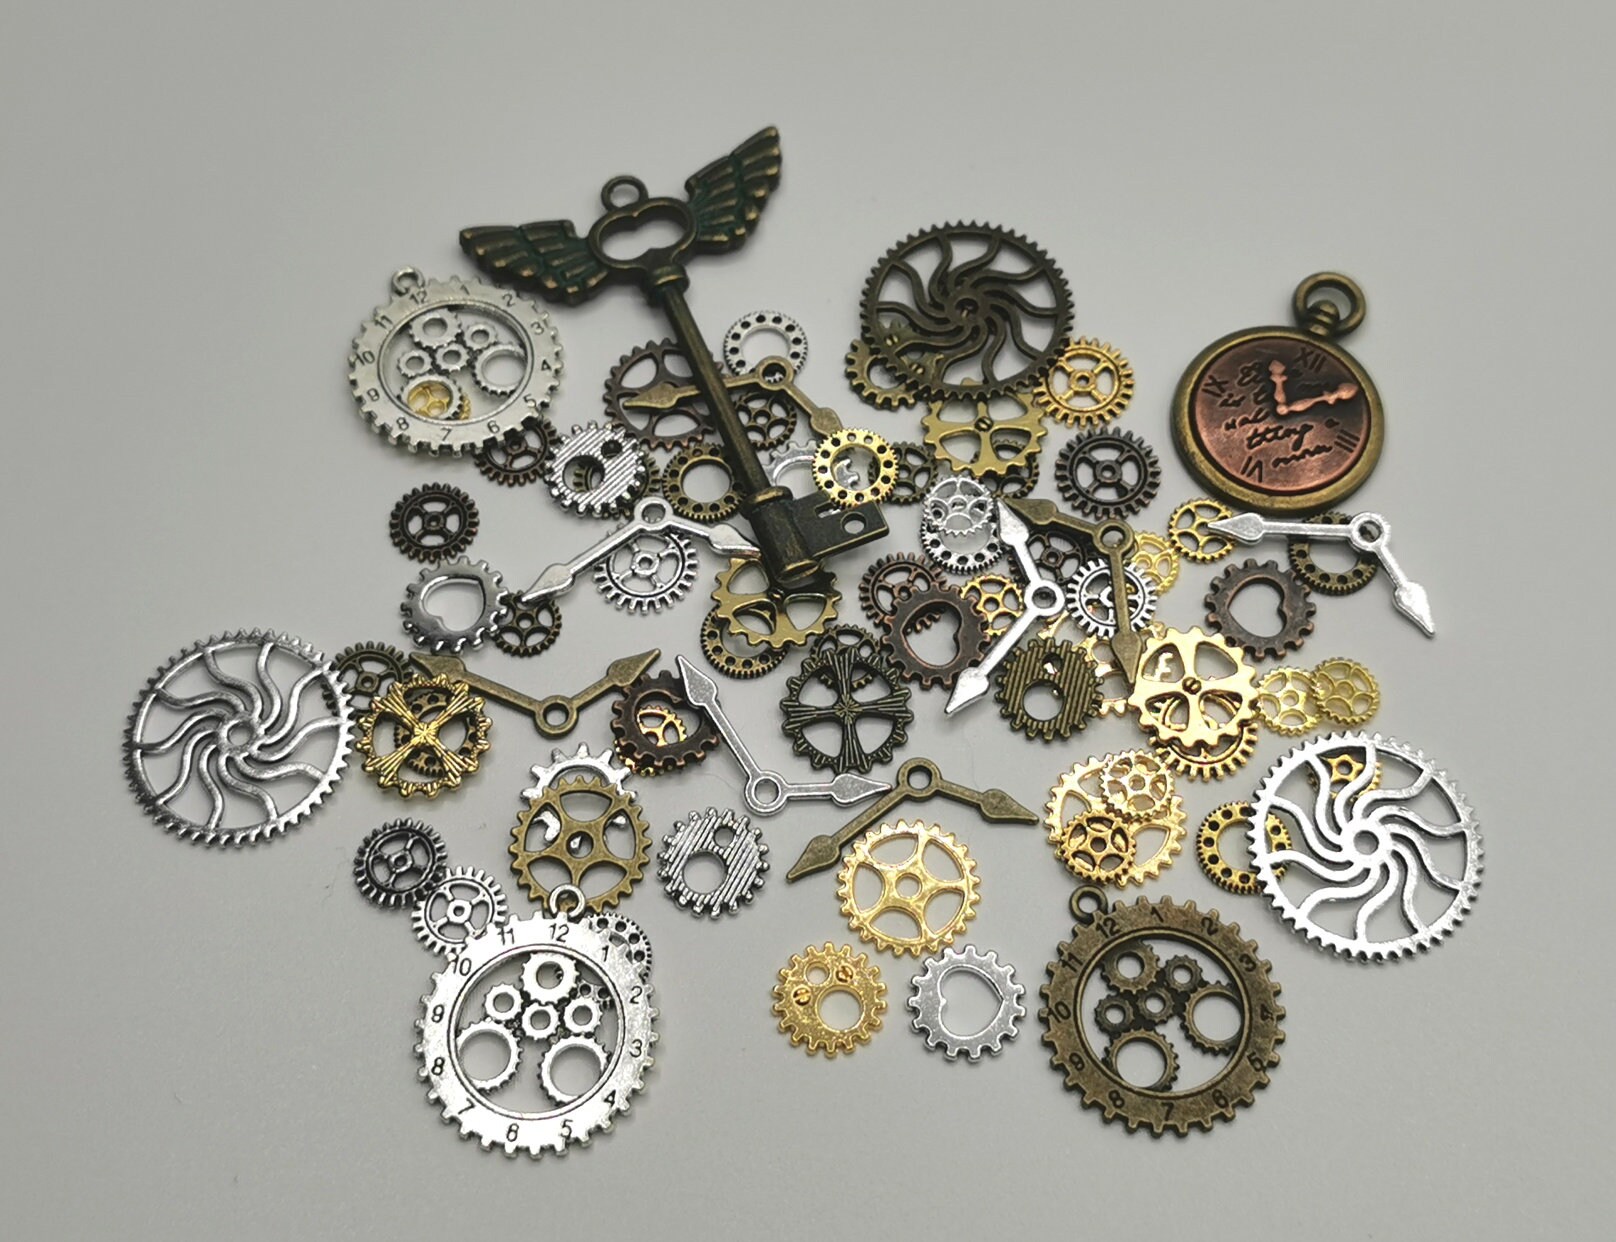 Mixed Watch Parts Jewelry Making Steampunk Art Craft - Etsy UK